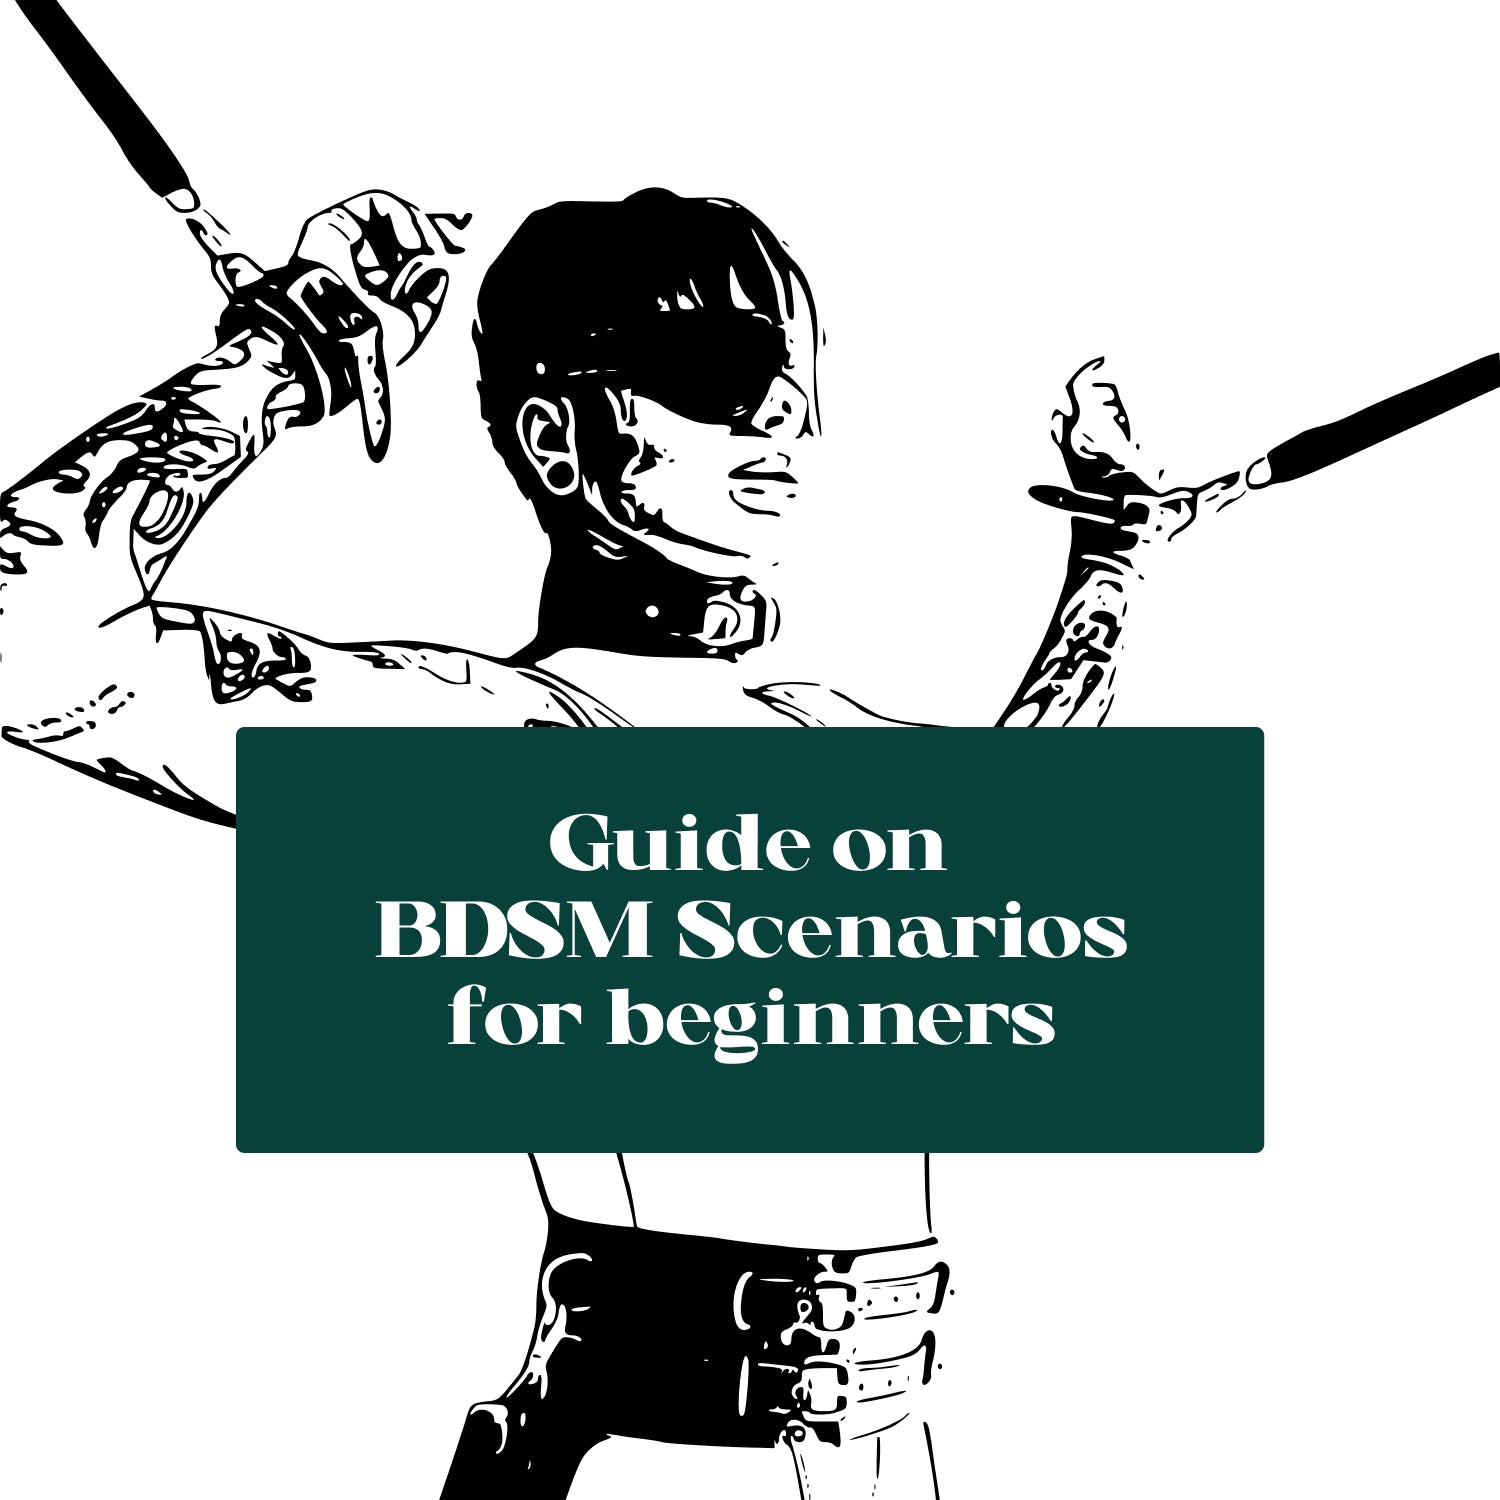 BDSM scenarios. 10 common roles in BDSM